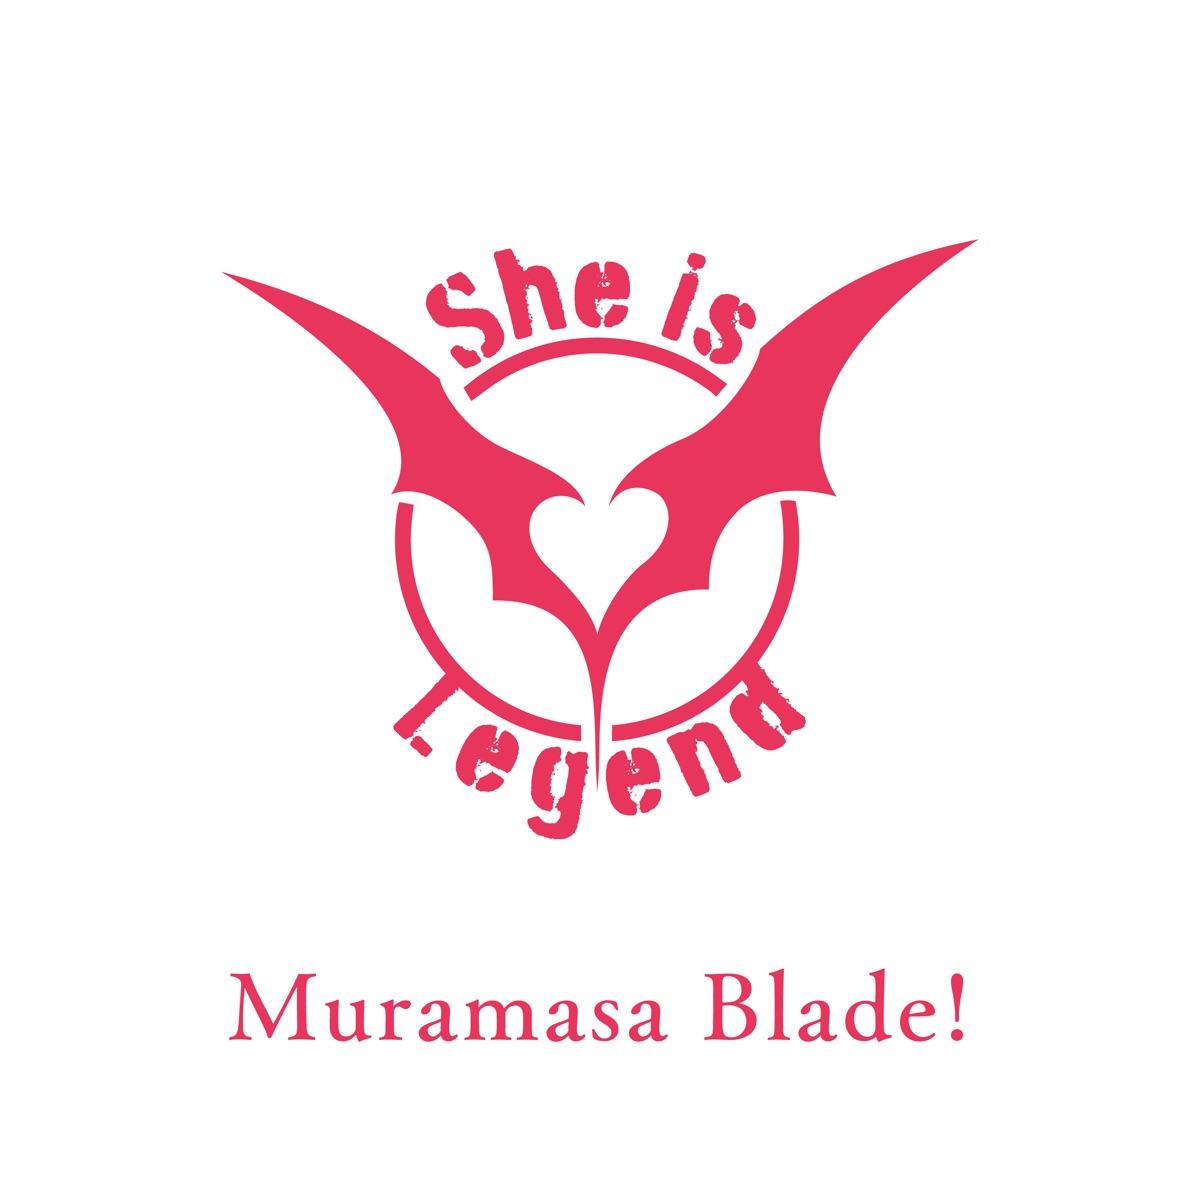 Cover art for『She is Legend - Shuumatsu no Hero』from the release『Muramasa Blade!』